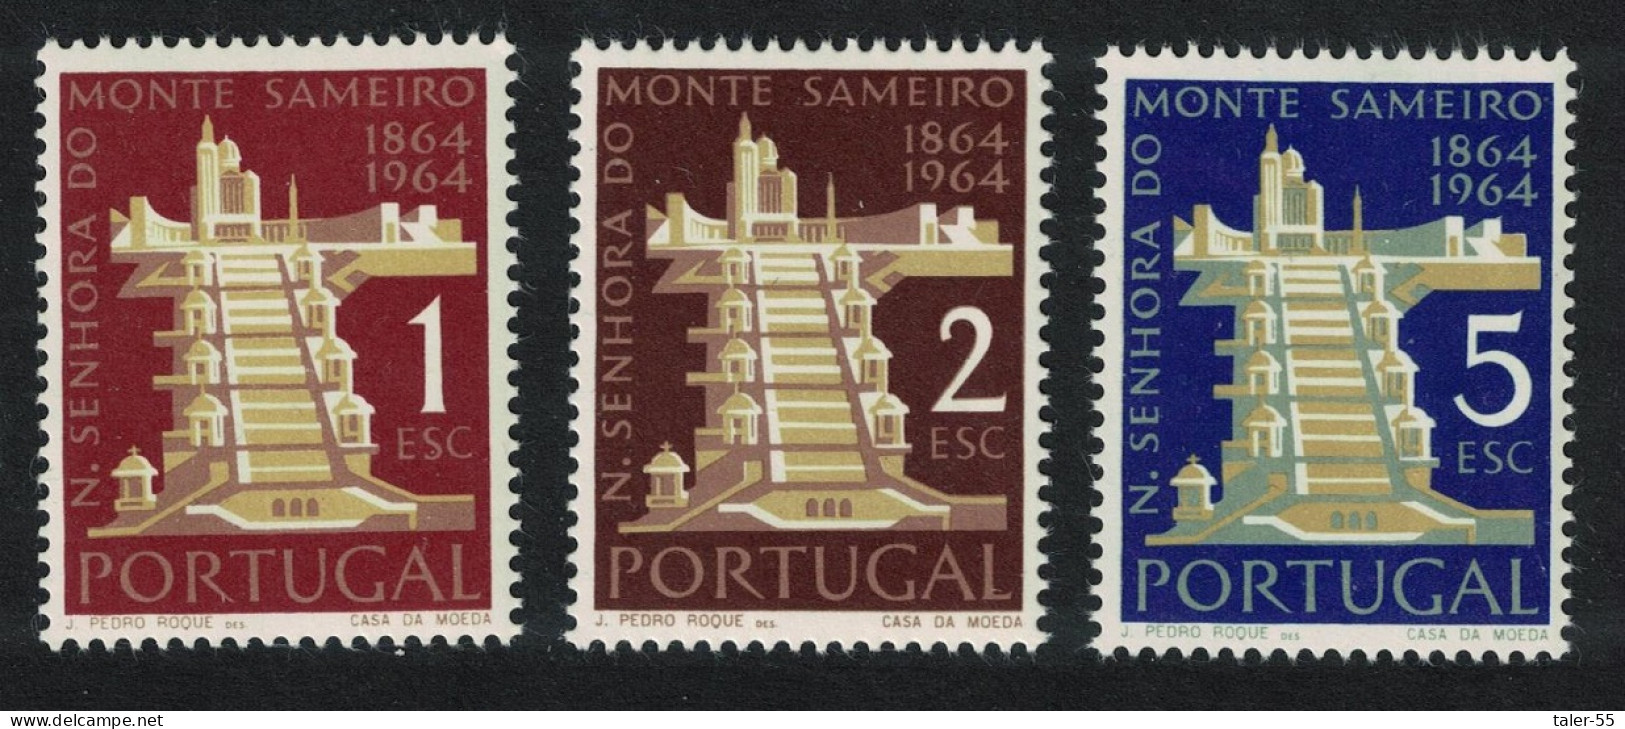 Portugal Sameiro Shrine 3v 1964 MNH SG#1246-1248 - Nuevos